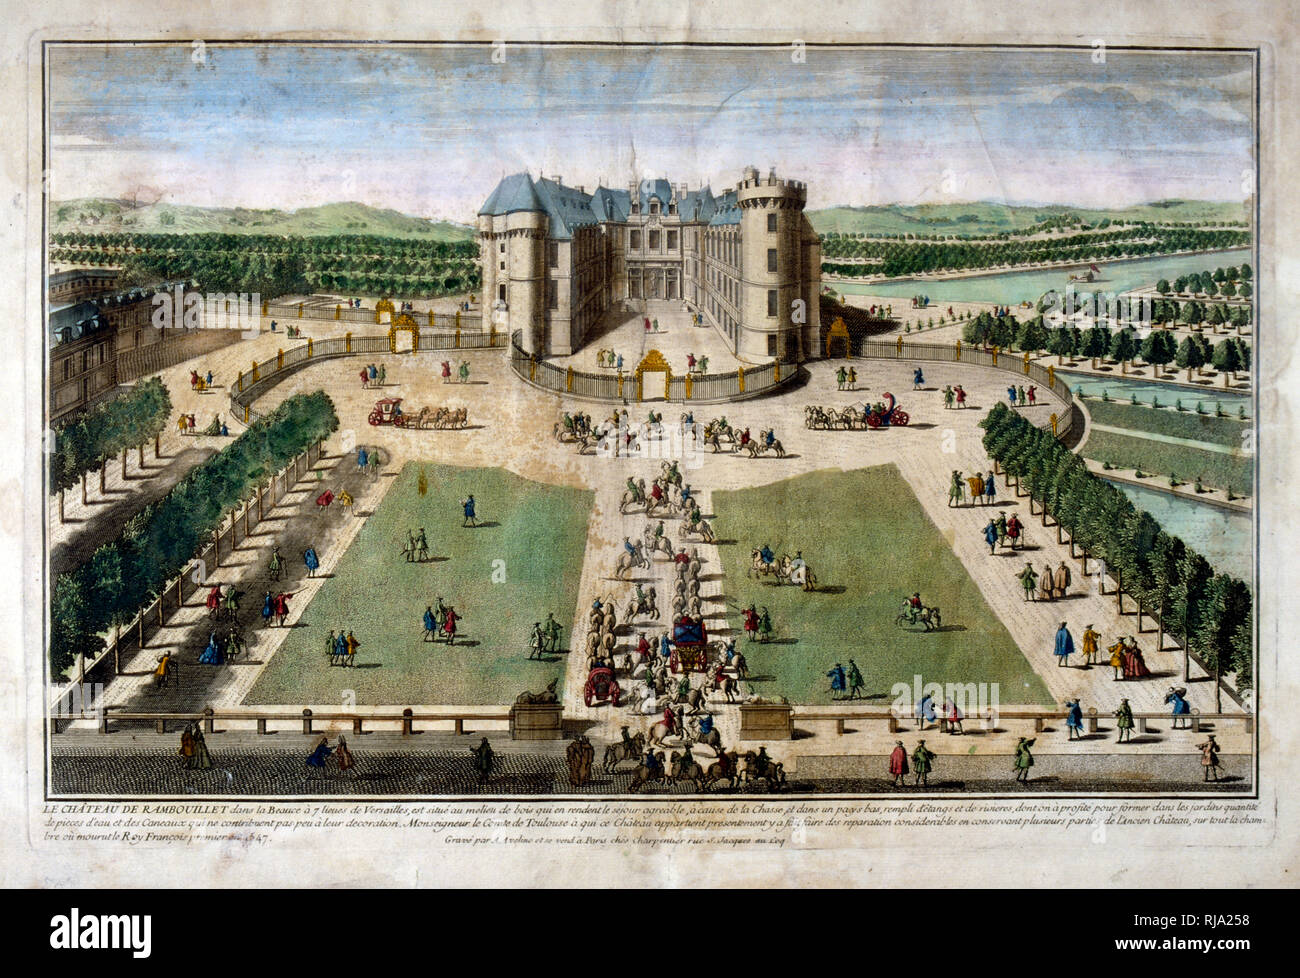 18. Jahrhundert eingravierten Abbildung des Château de Rambouillet, in der Stadt von Rambouillet, in Nordfrankreich, ursprünglich eine befestigte Manor war bis 1368 zurückgehen. Im Jahre 1783 wurde das Schloss im Privatbesitz von König Louis XVI. Während der Französischen Revolution, die Domäne von Rambouillet wurde Bien national, das Chateau entleert wird seiner Einrichtung und die Gärten und die umliegenden Park fallen in Vernachlässigung. Stockfoto